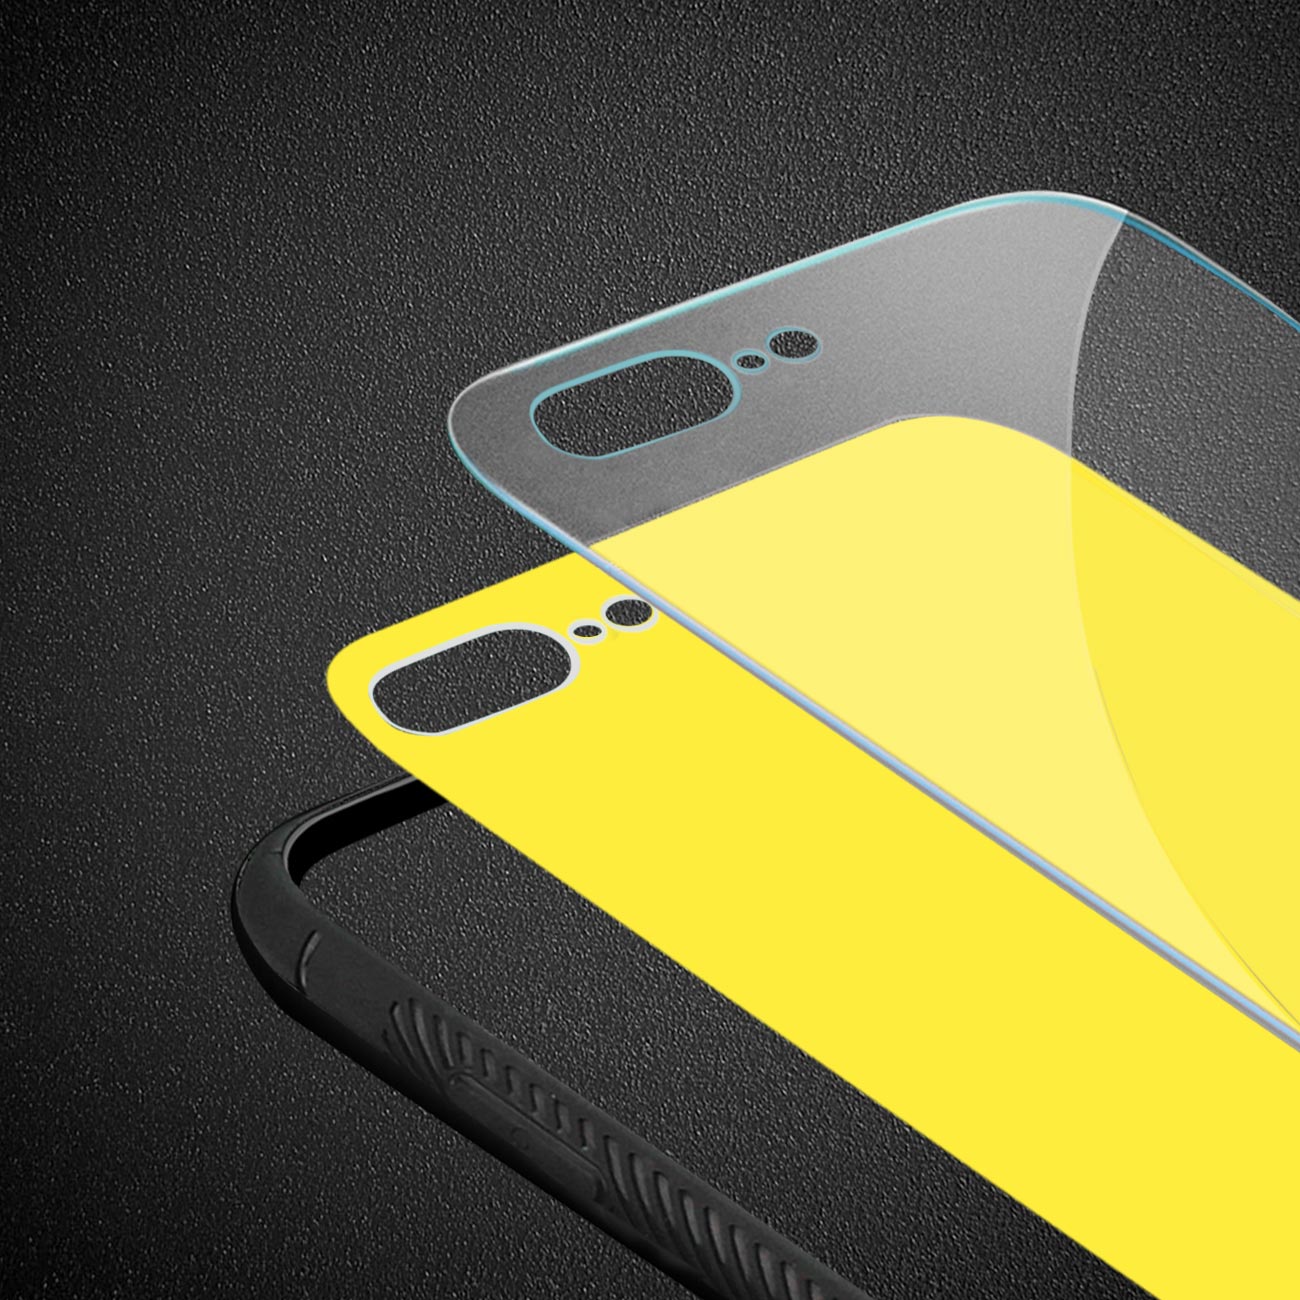 Reiko iPhone 8 Plus Hard Glass Design TPU Case In Yellow